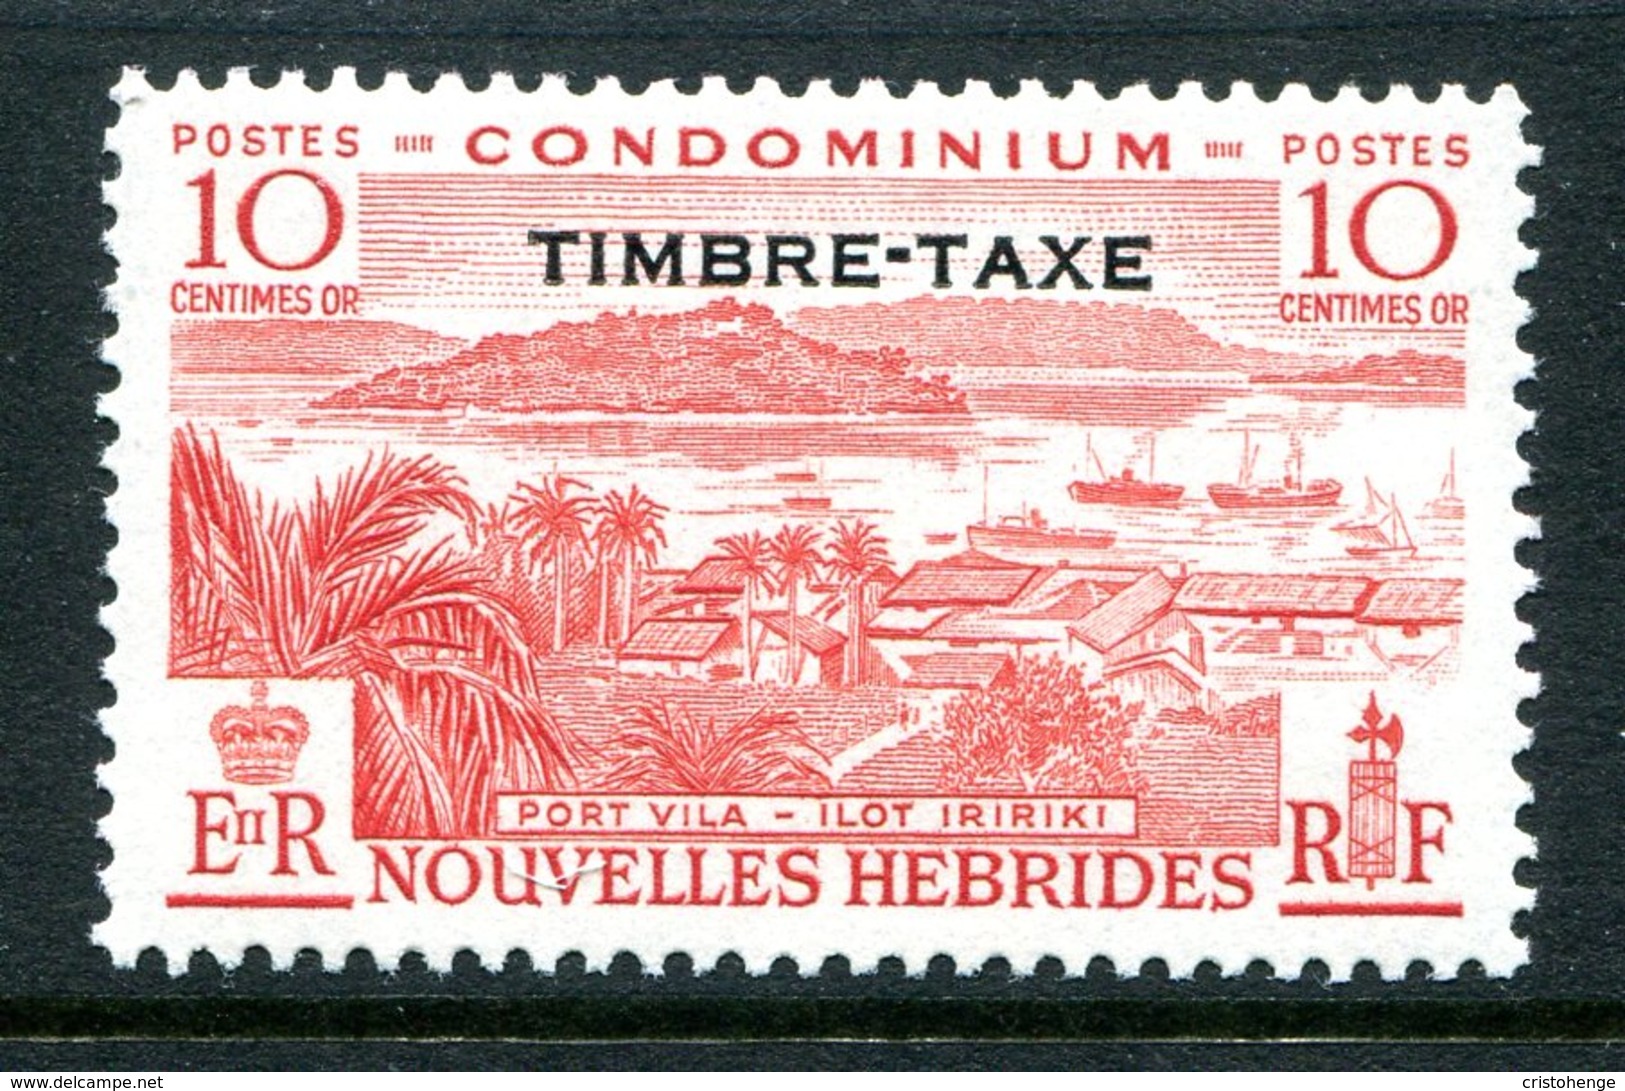 Nouvelles Hebrides 1957 Postage Due - 10c Value HM (SG FD108) - Timbres-taxe